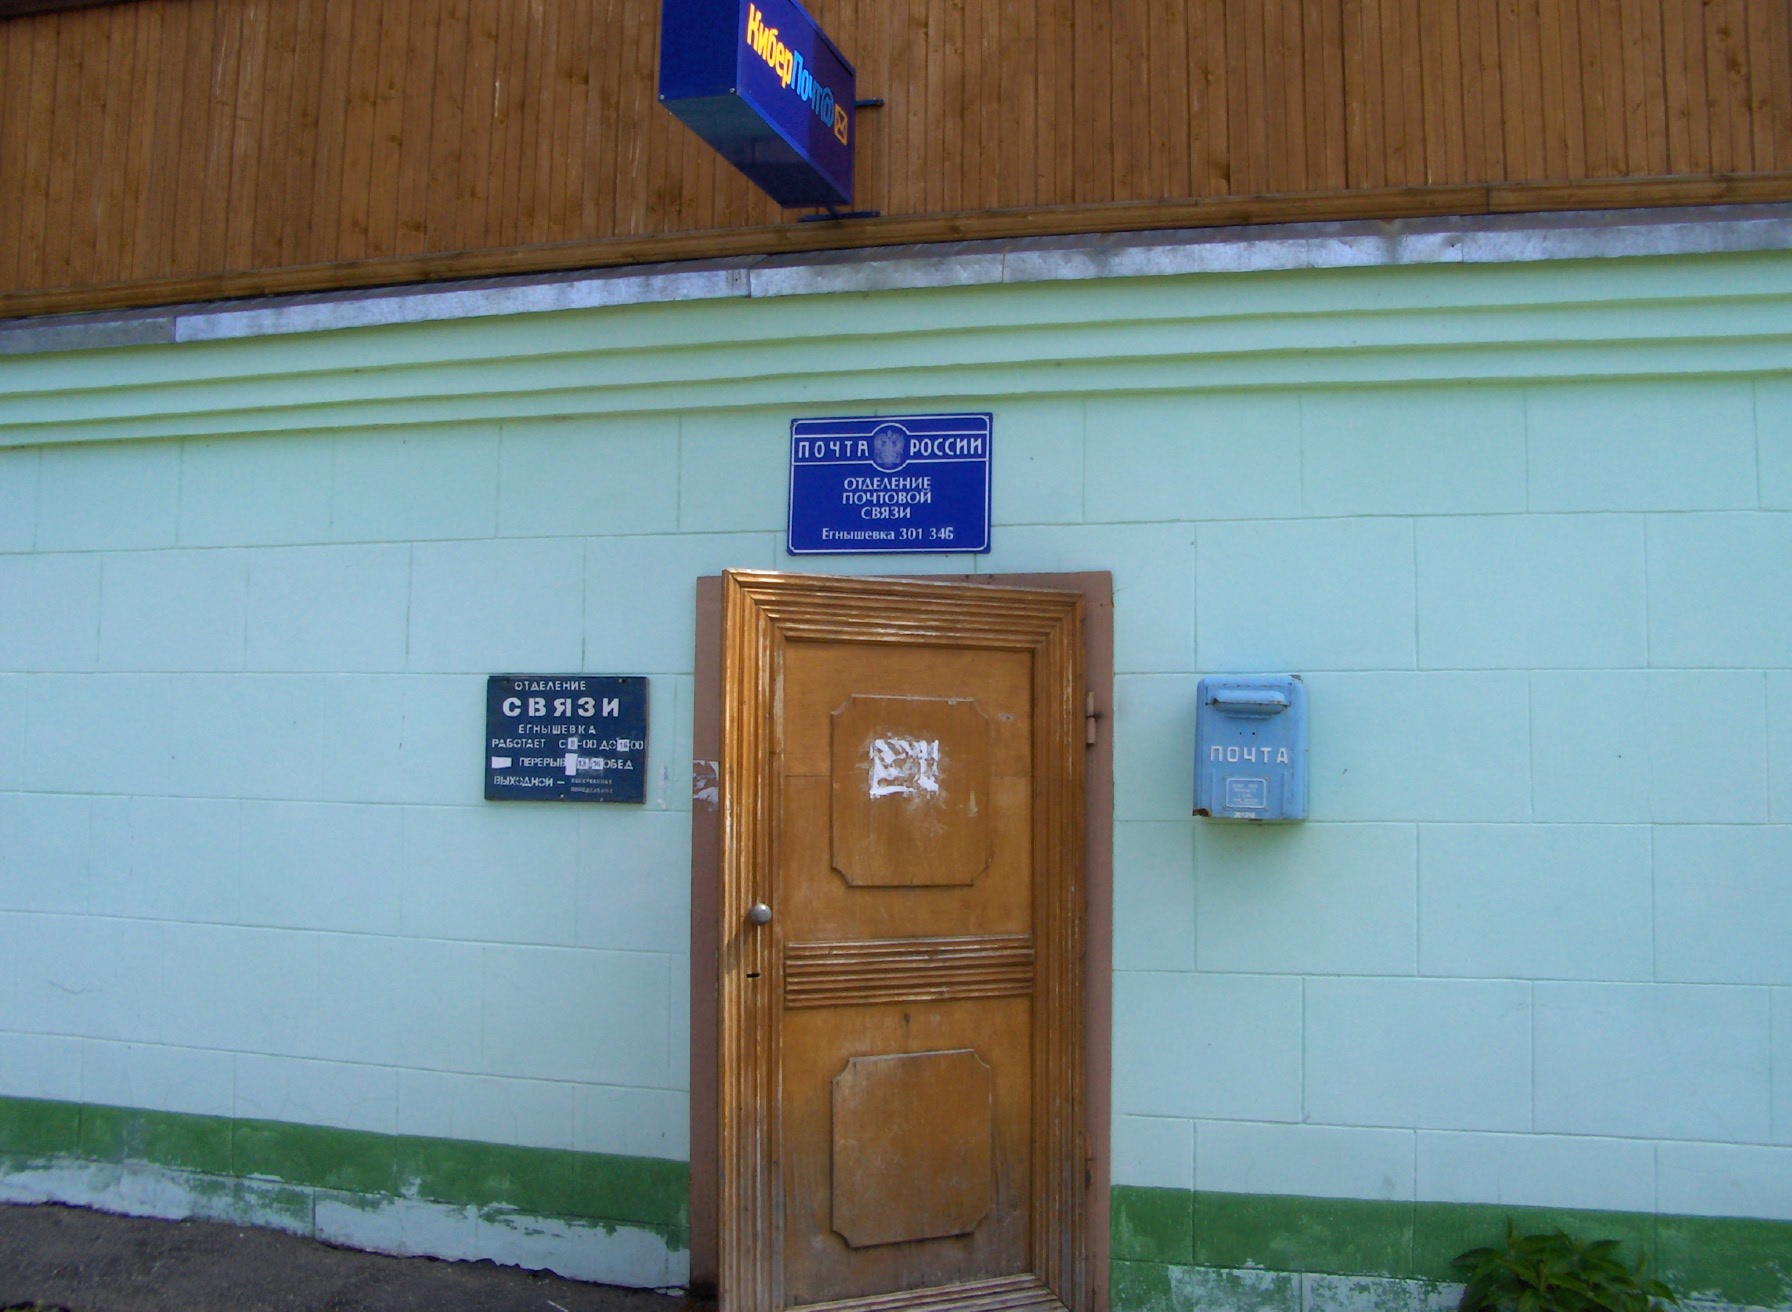 ФАСАД, отделение почтовой связи 301346, Тульская обл., Алексинский р-он, Егнышевка